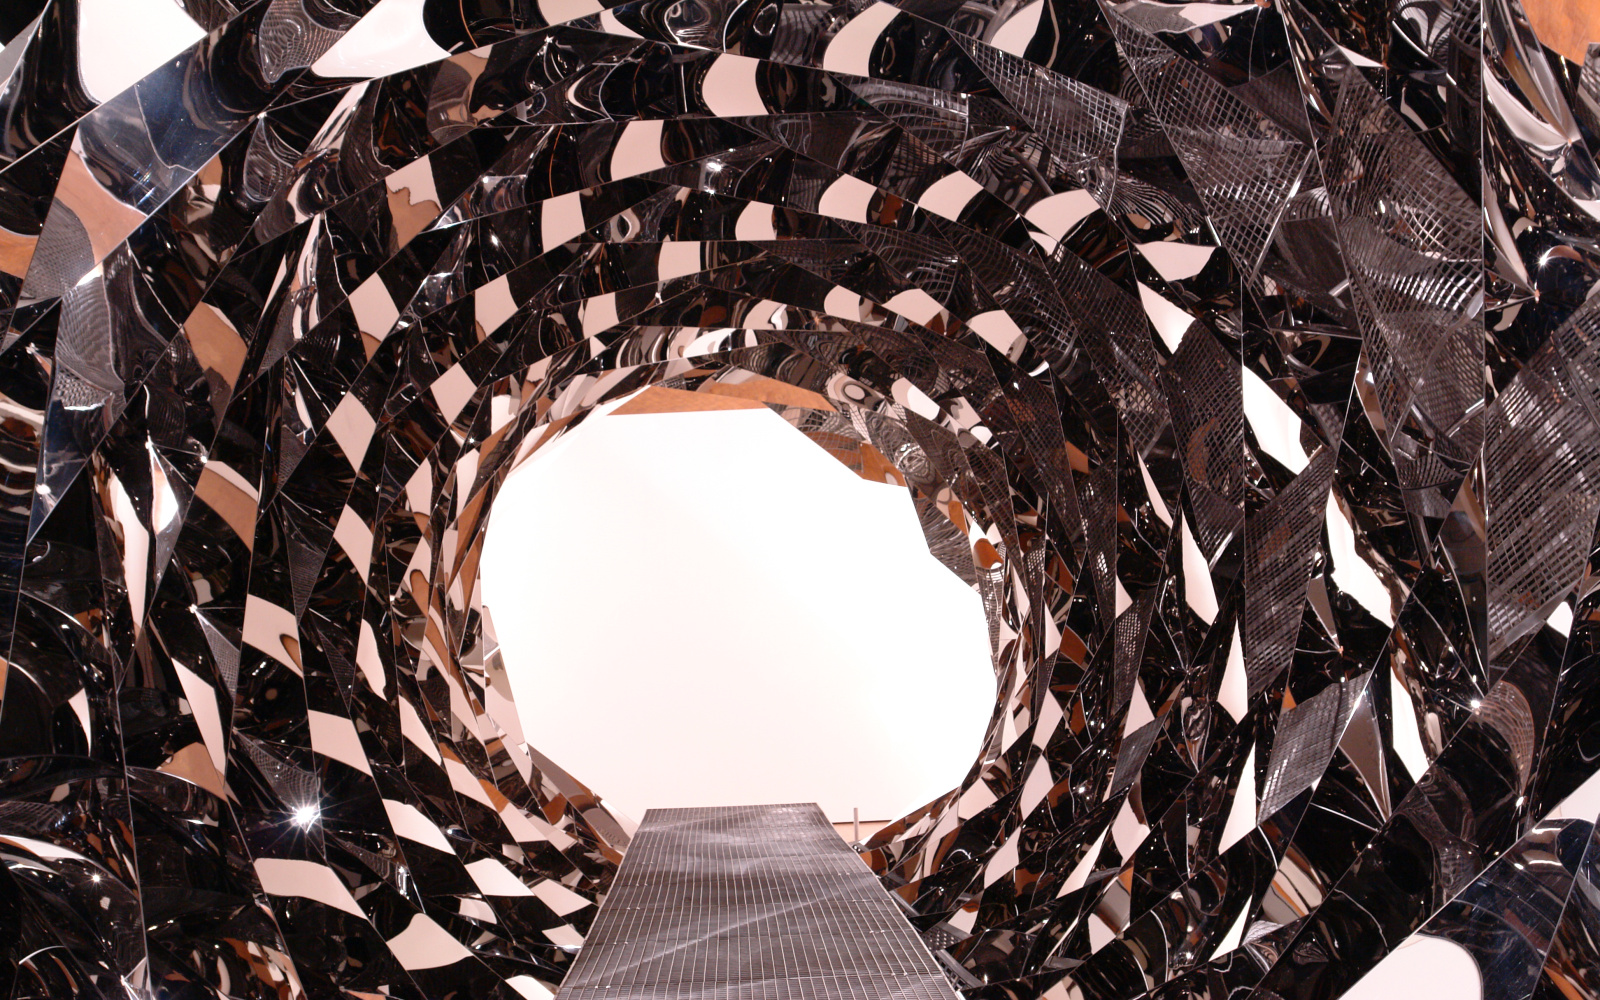 Ausstellungsansicht "Olafur Eliasson: Your Spiral View"